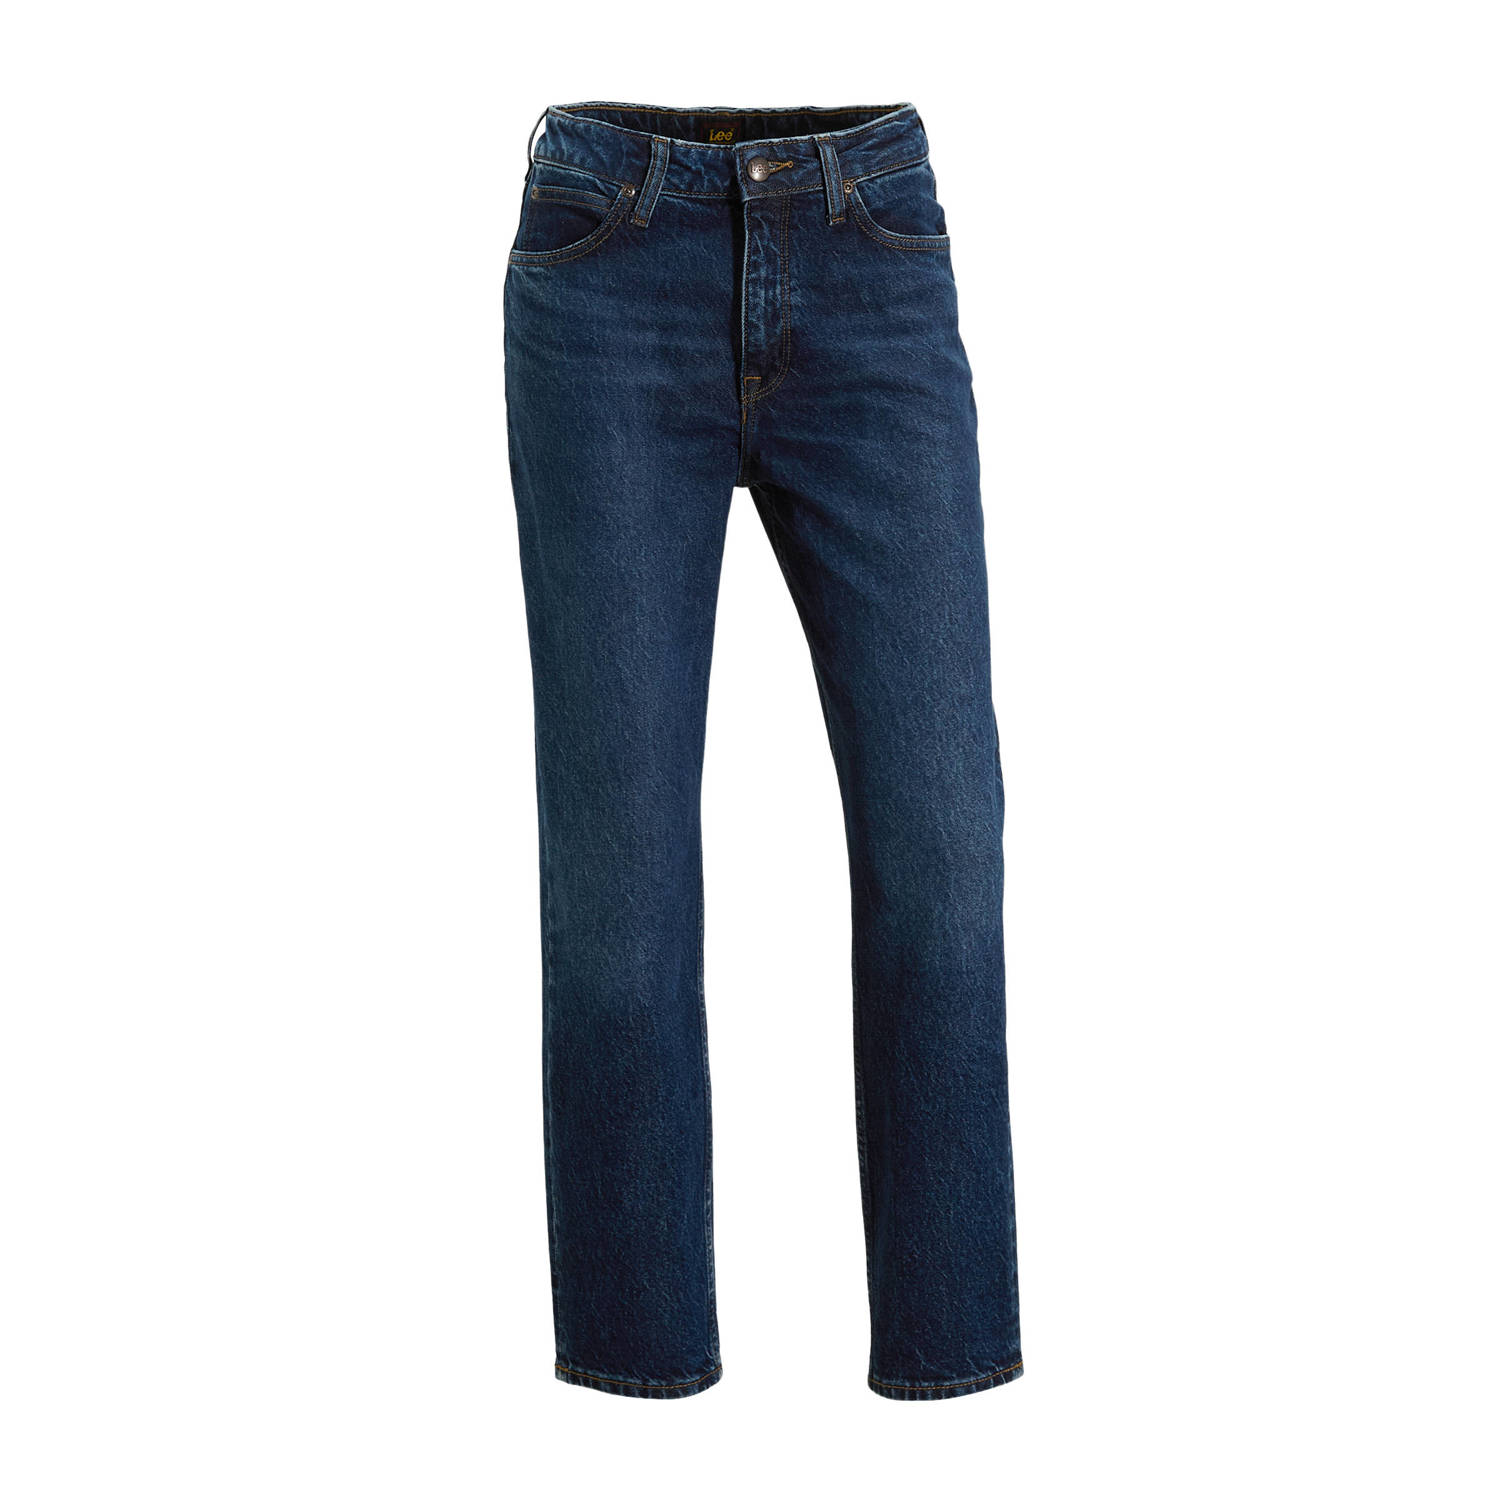 Lee straight jeans dark blue denim